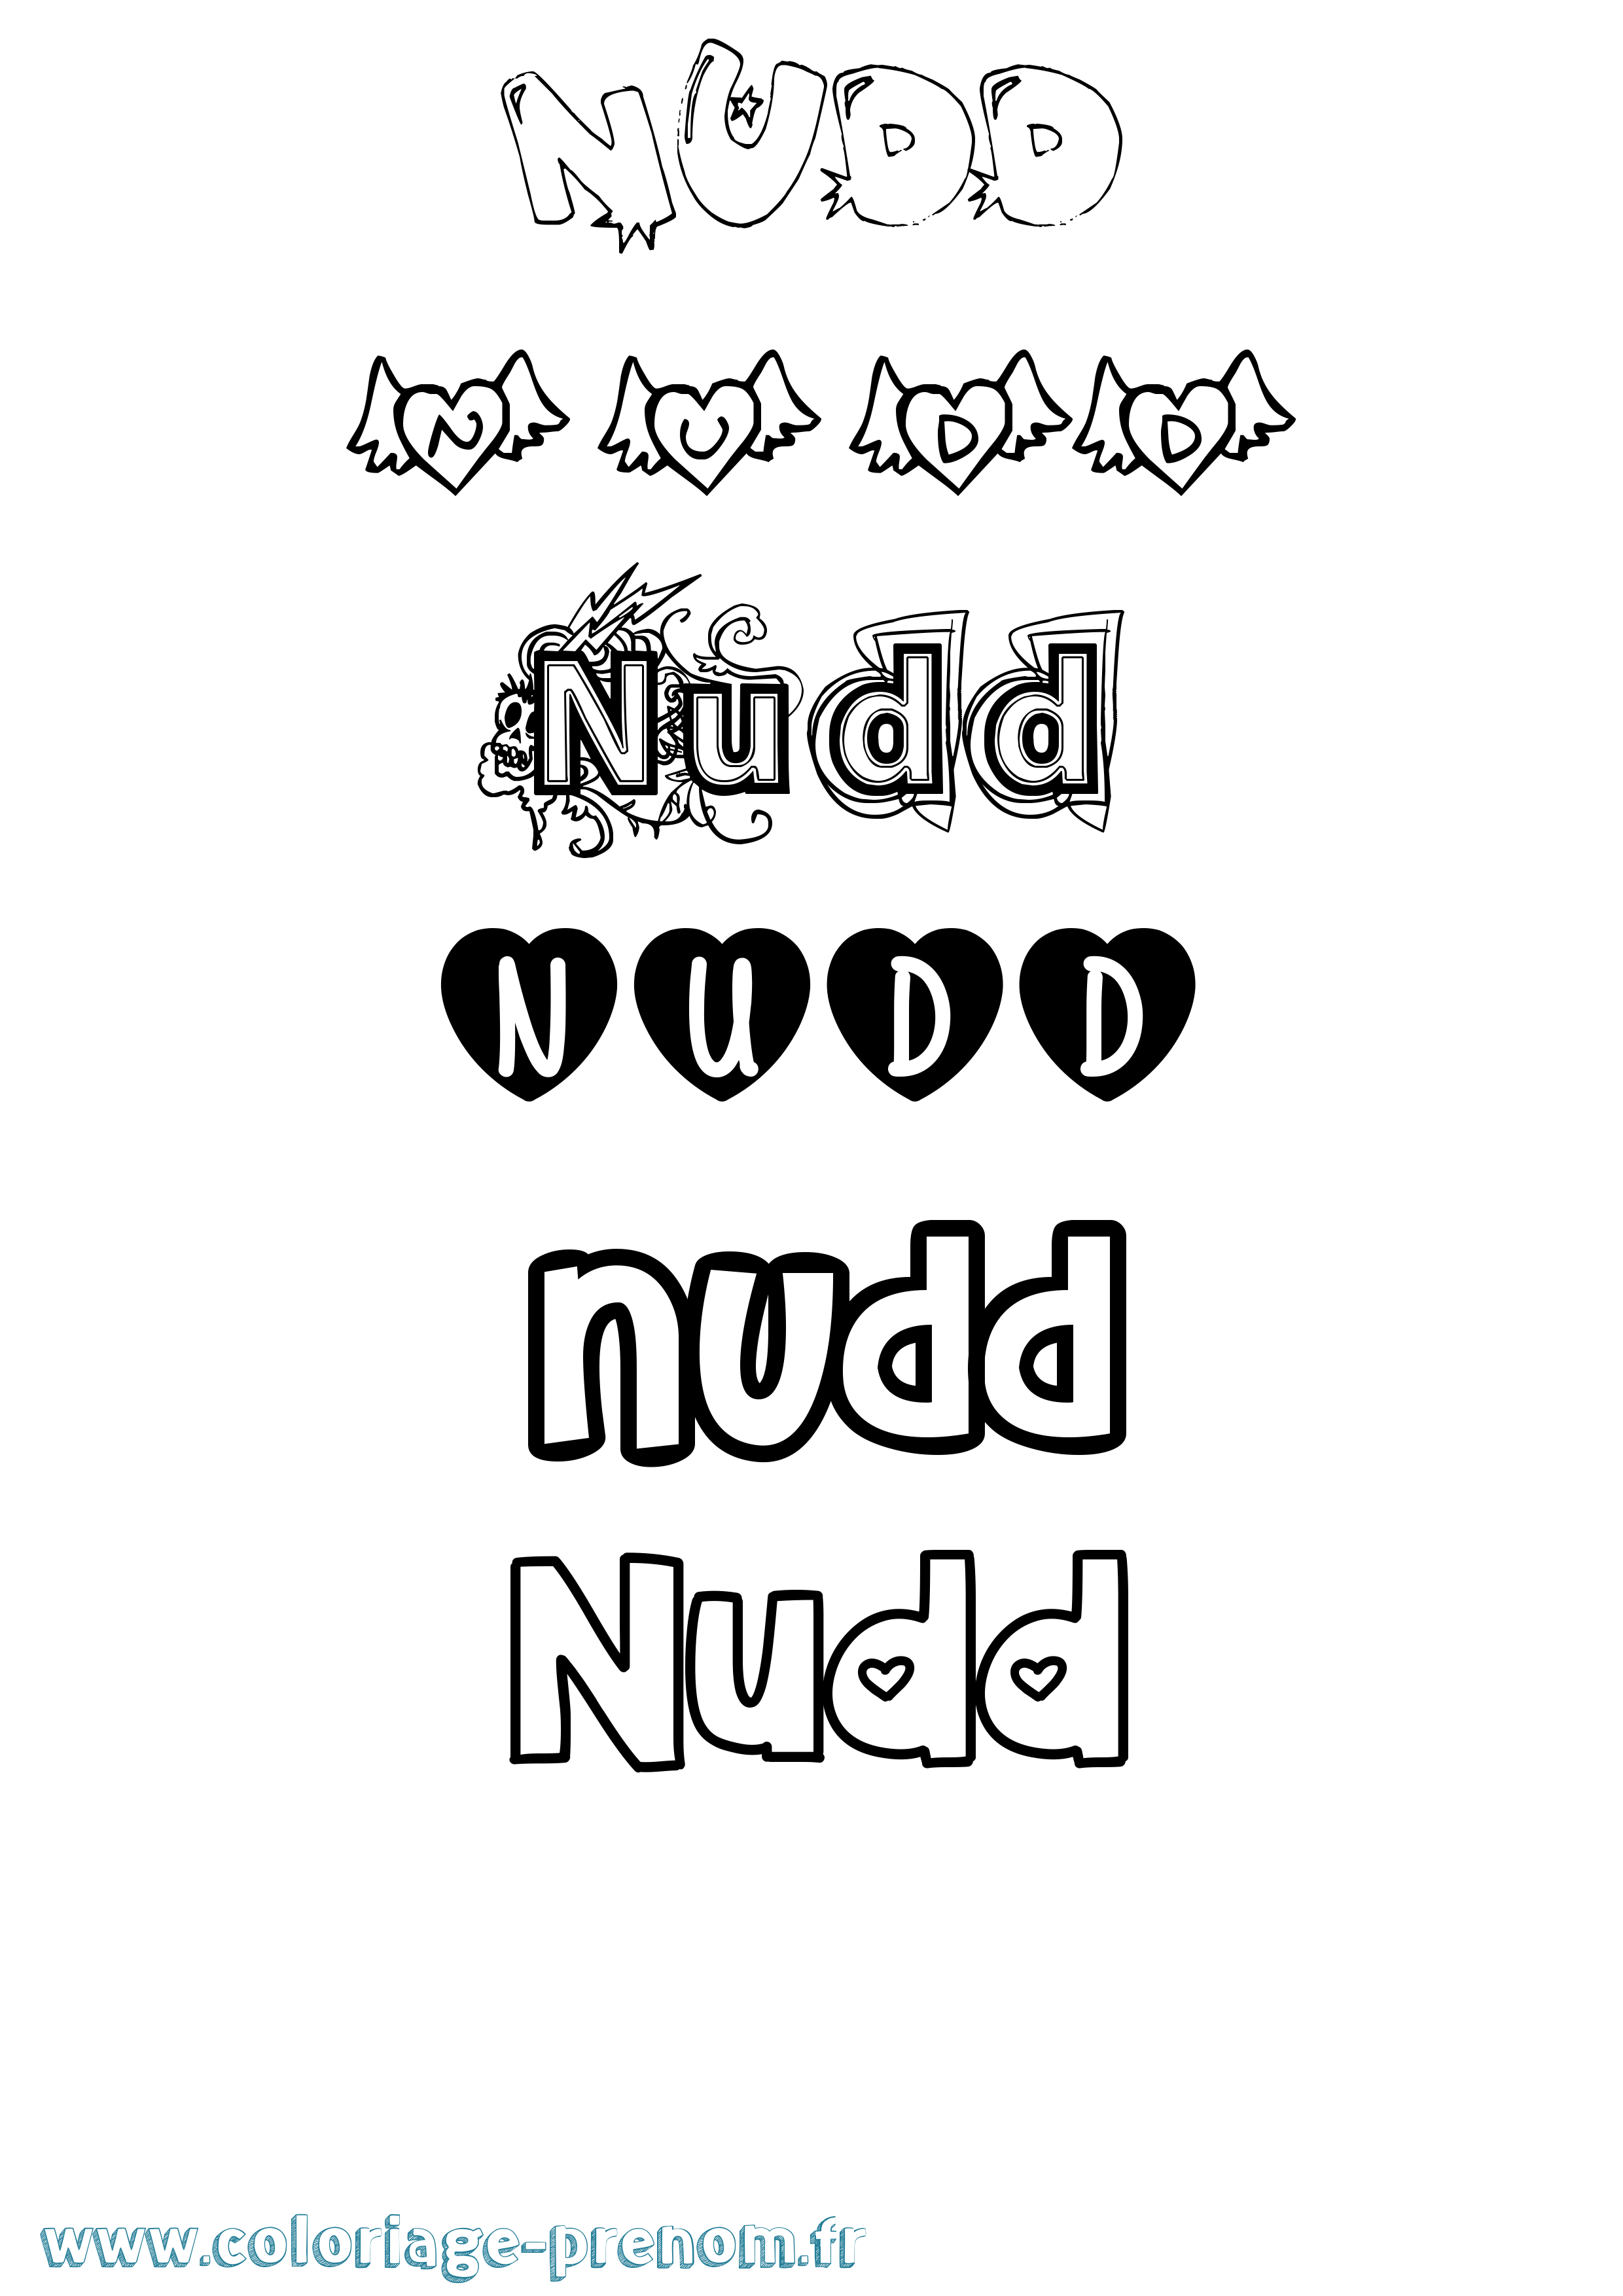 Coloriage prénom Nudd Girly